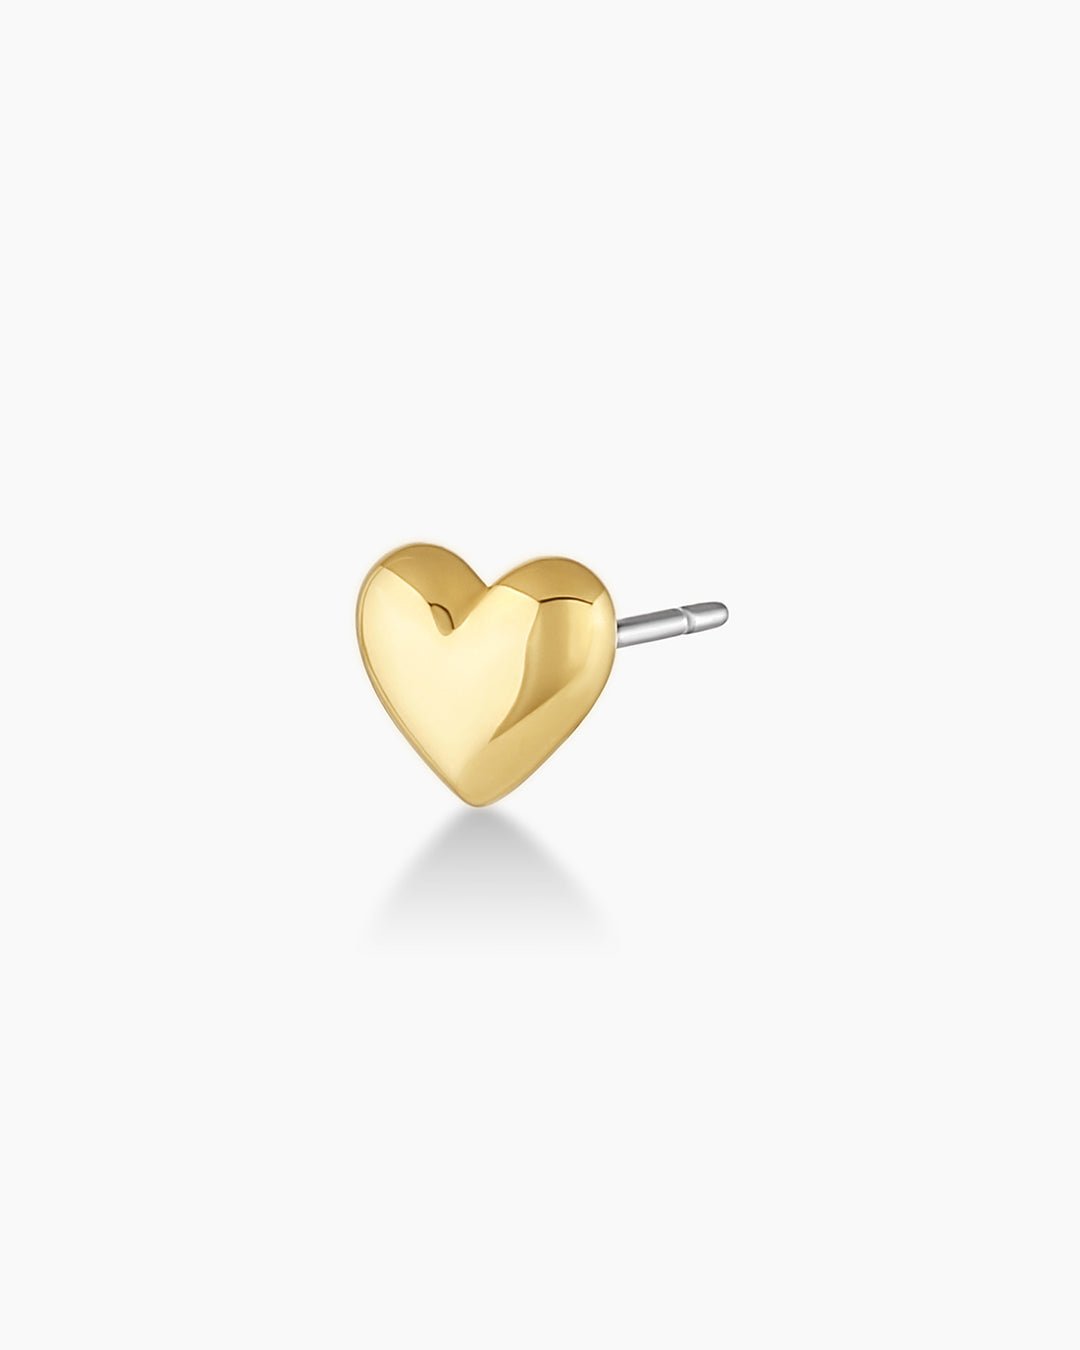 Heart Stud Earring in 14K Solid Gold, Women's by Gorjana